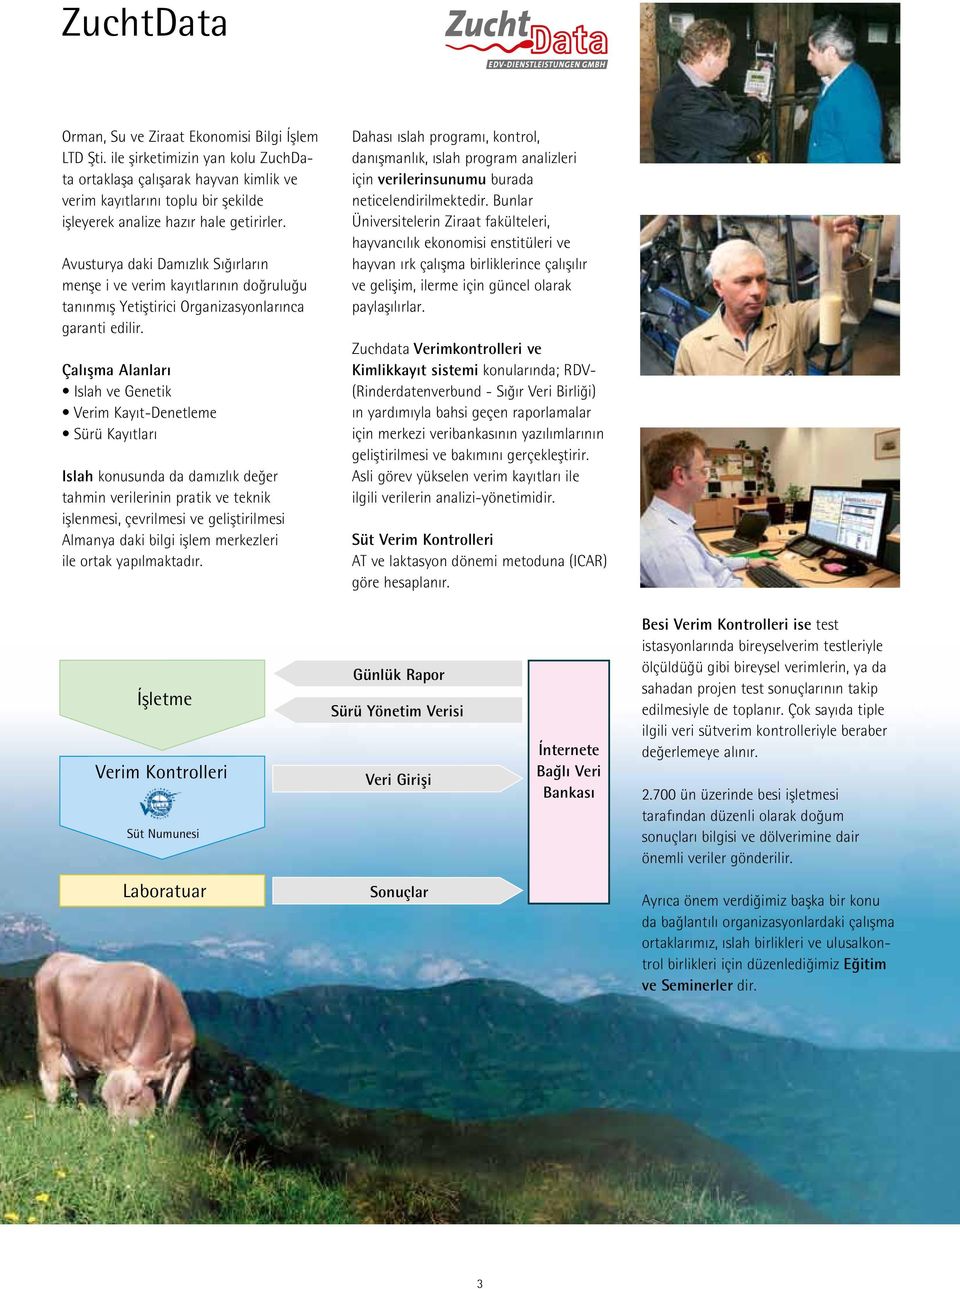 Avusturya daki Damızlık Sığırların menşe i ve verim kayıtlarının doğruluğu tanınmış Yetiştirici Organizasyonlarınca garanti edilir.